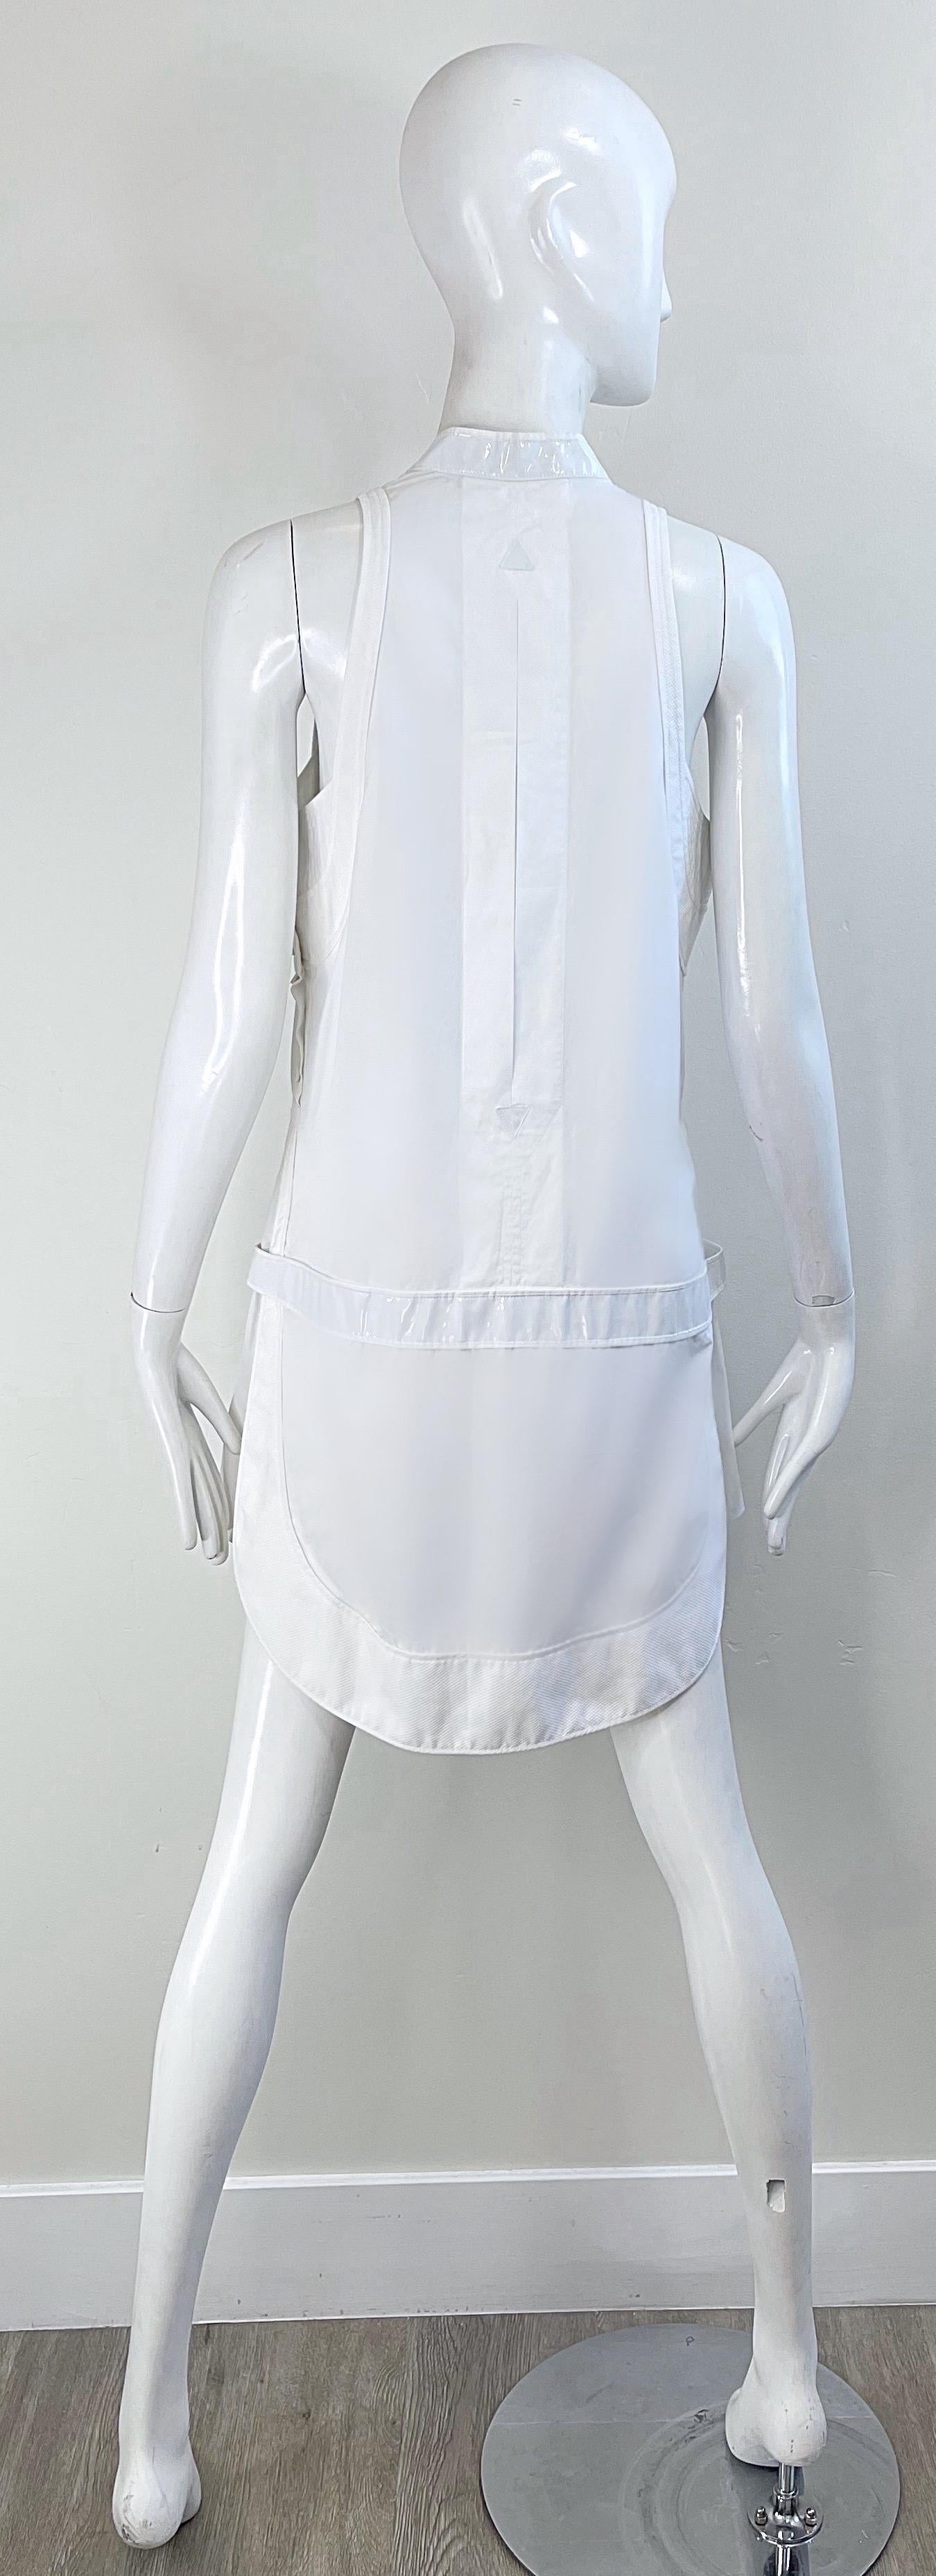 Balenciaga Spring 2007 by Nicolas Ghesquiere Size 38 / 8 White Tuxedo Dress  For Sale 2